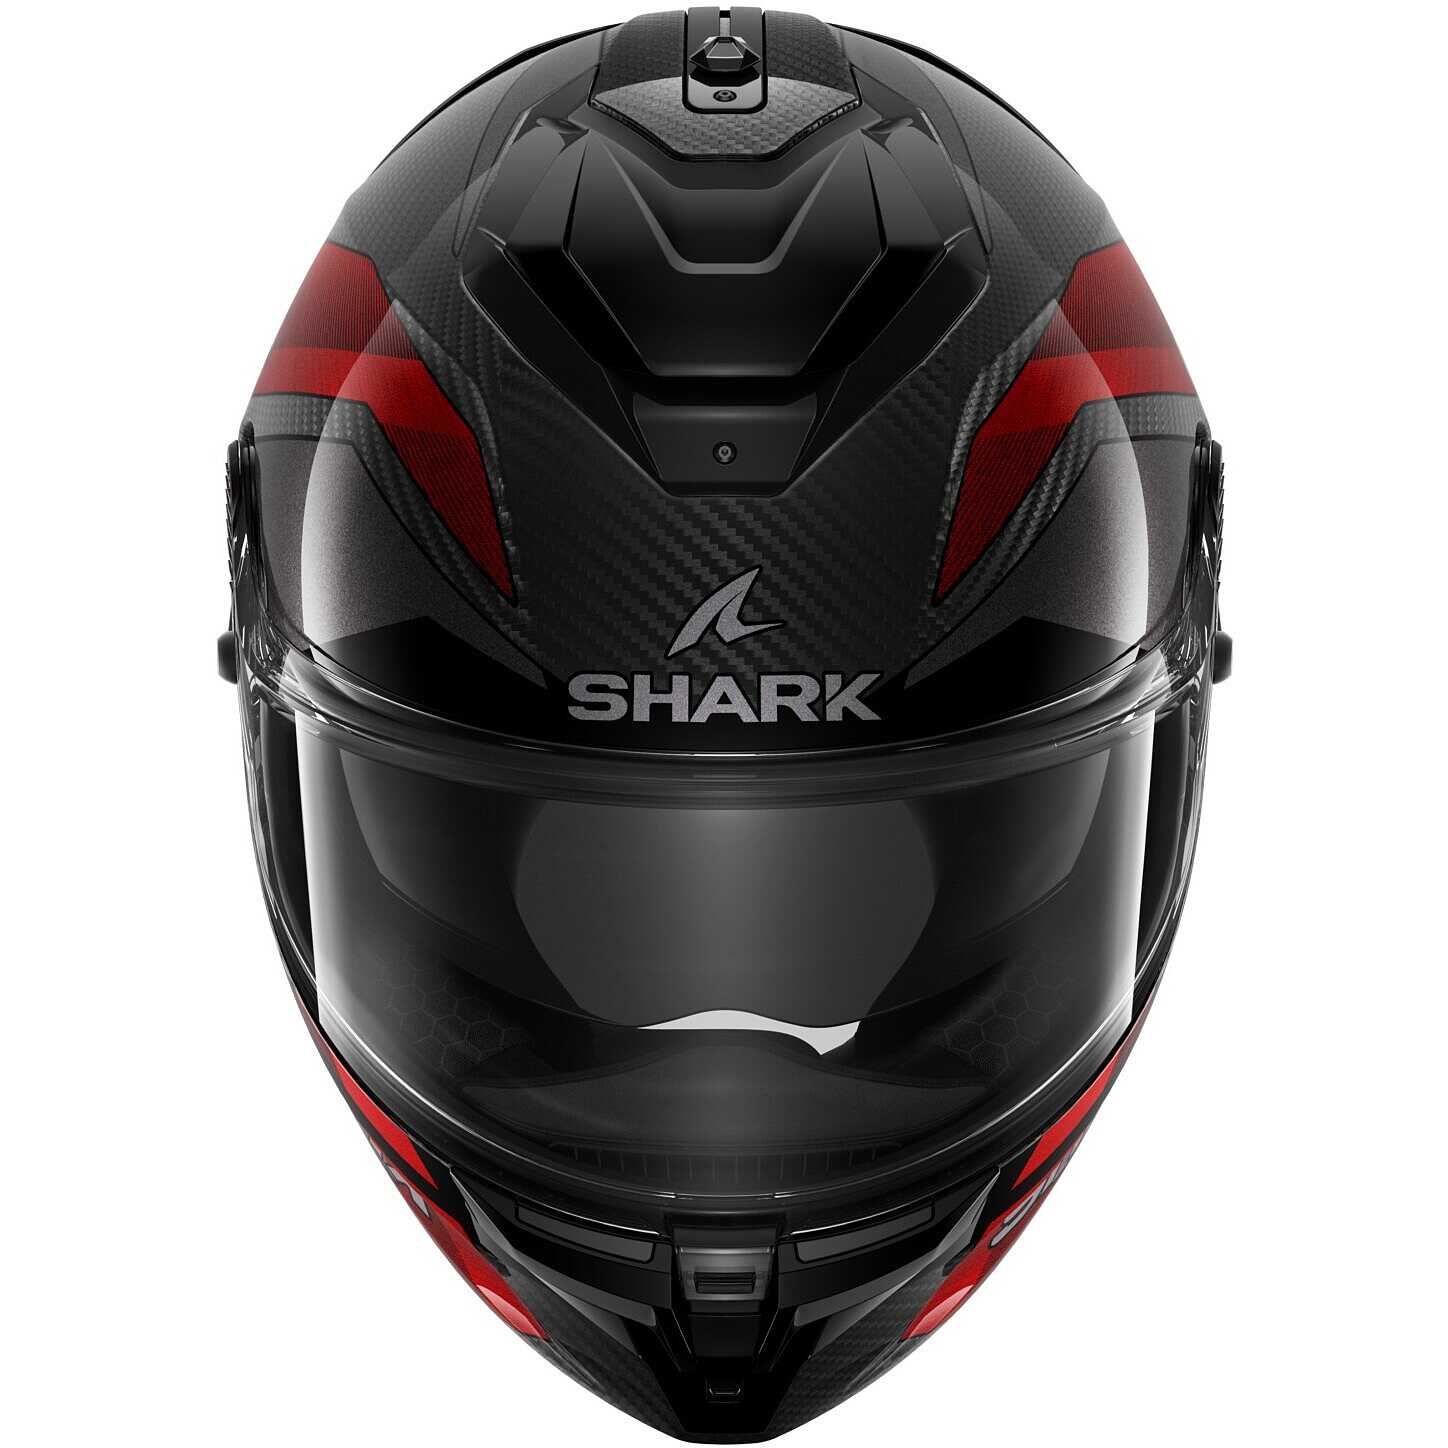 Casque Intégral Moto Shark Ridill 2 Assya - Livraison Offerte